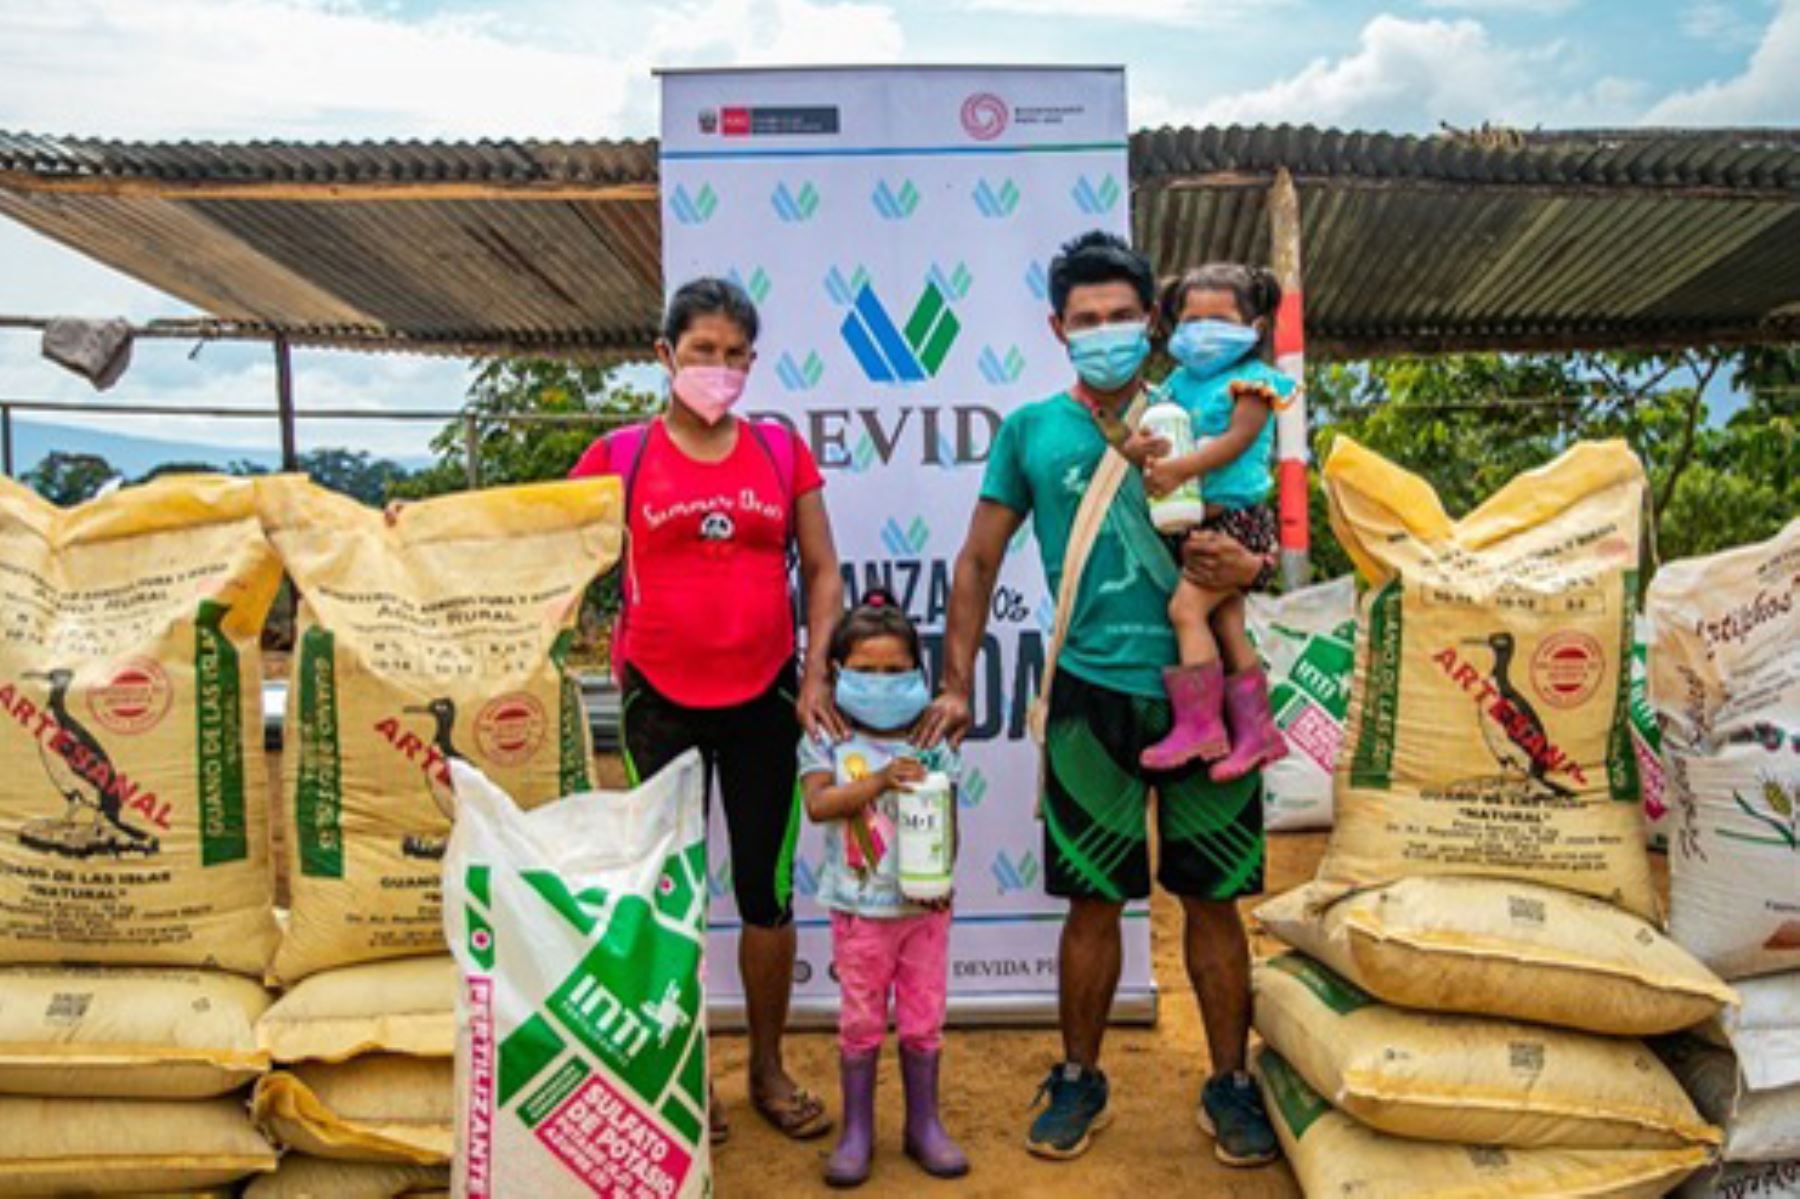 Los insumos permitirán una mejor producción de café de 1,035 familias caficultoras del norte del Vraem. Foto: ANDINA/Devida